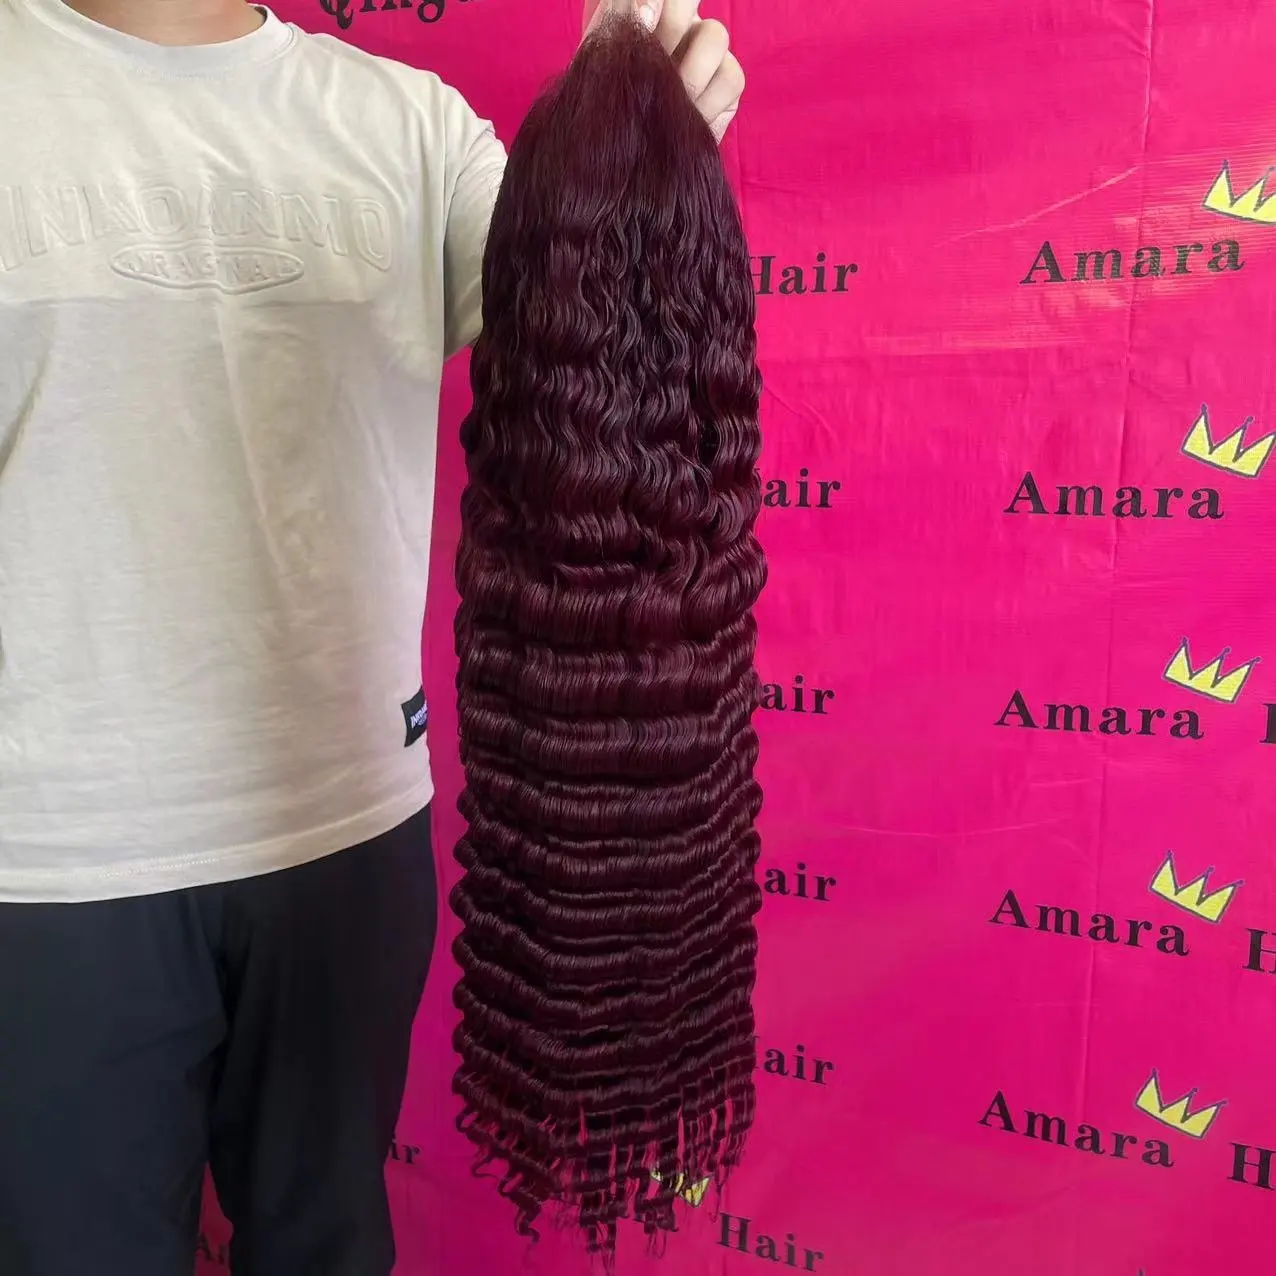 Perruque deep wave brésilienne 99j,-Amara Hair, perruque lace transparent bordeaux, perruques de cheveux humains bon marché avec livraison gratuite